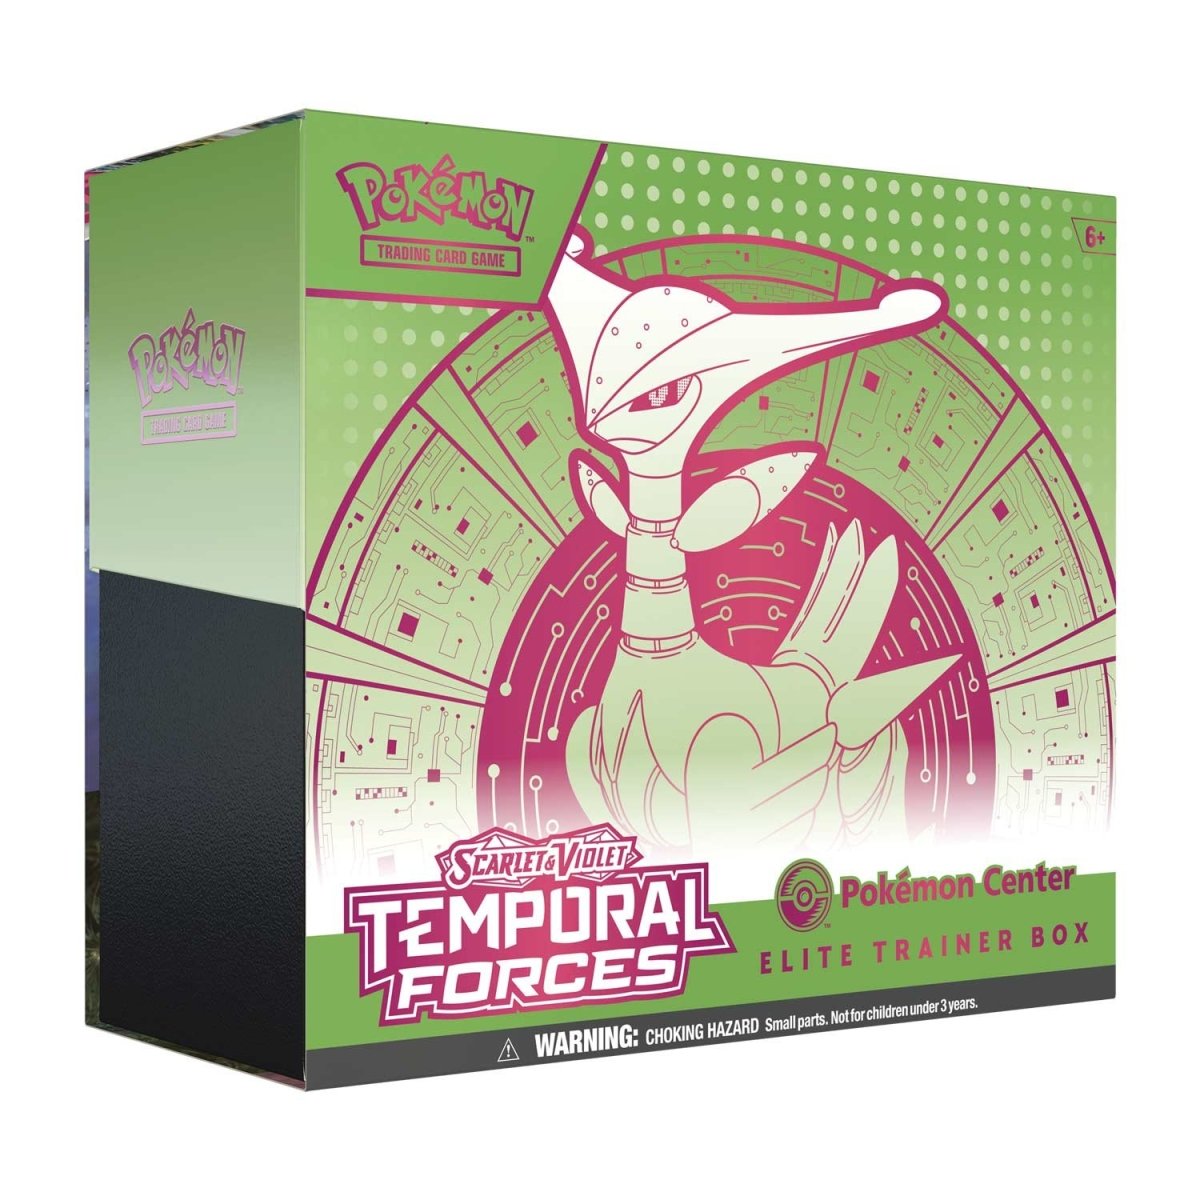 Pokémon - Temporal Forces Elite Trainer Box